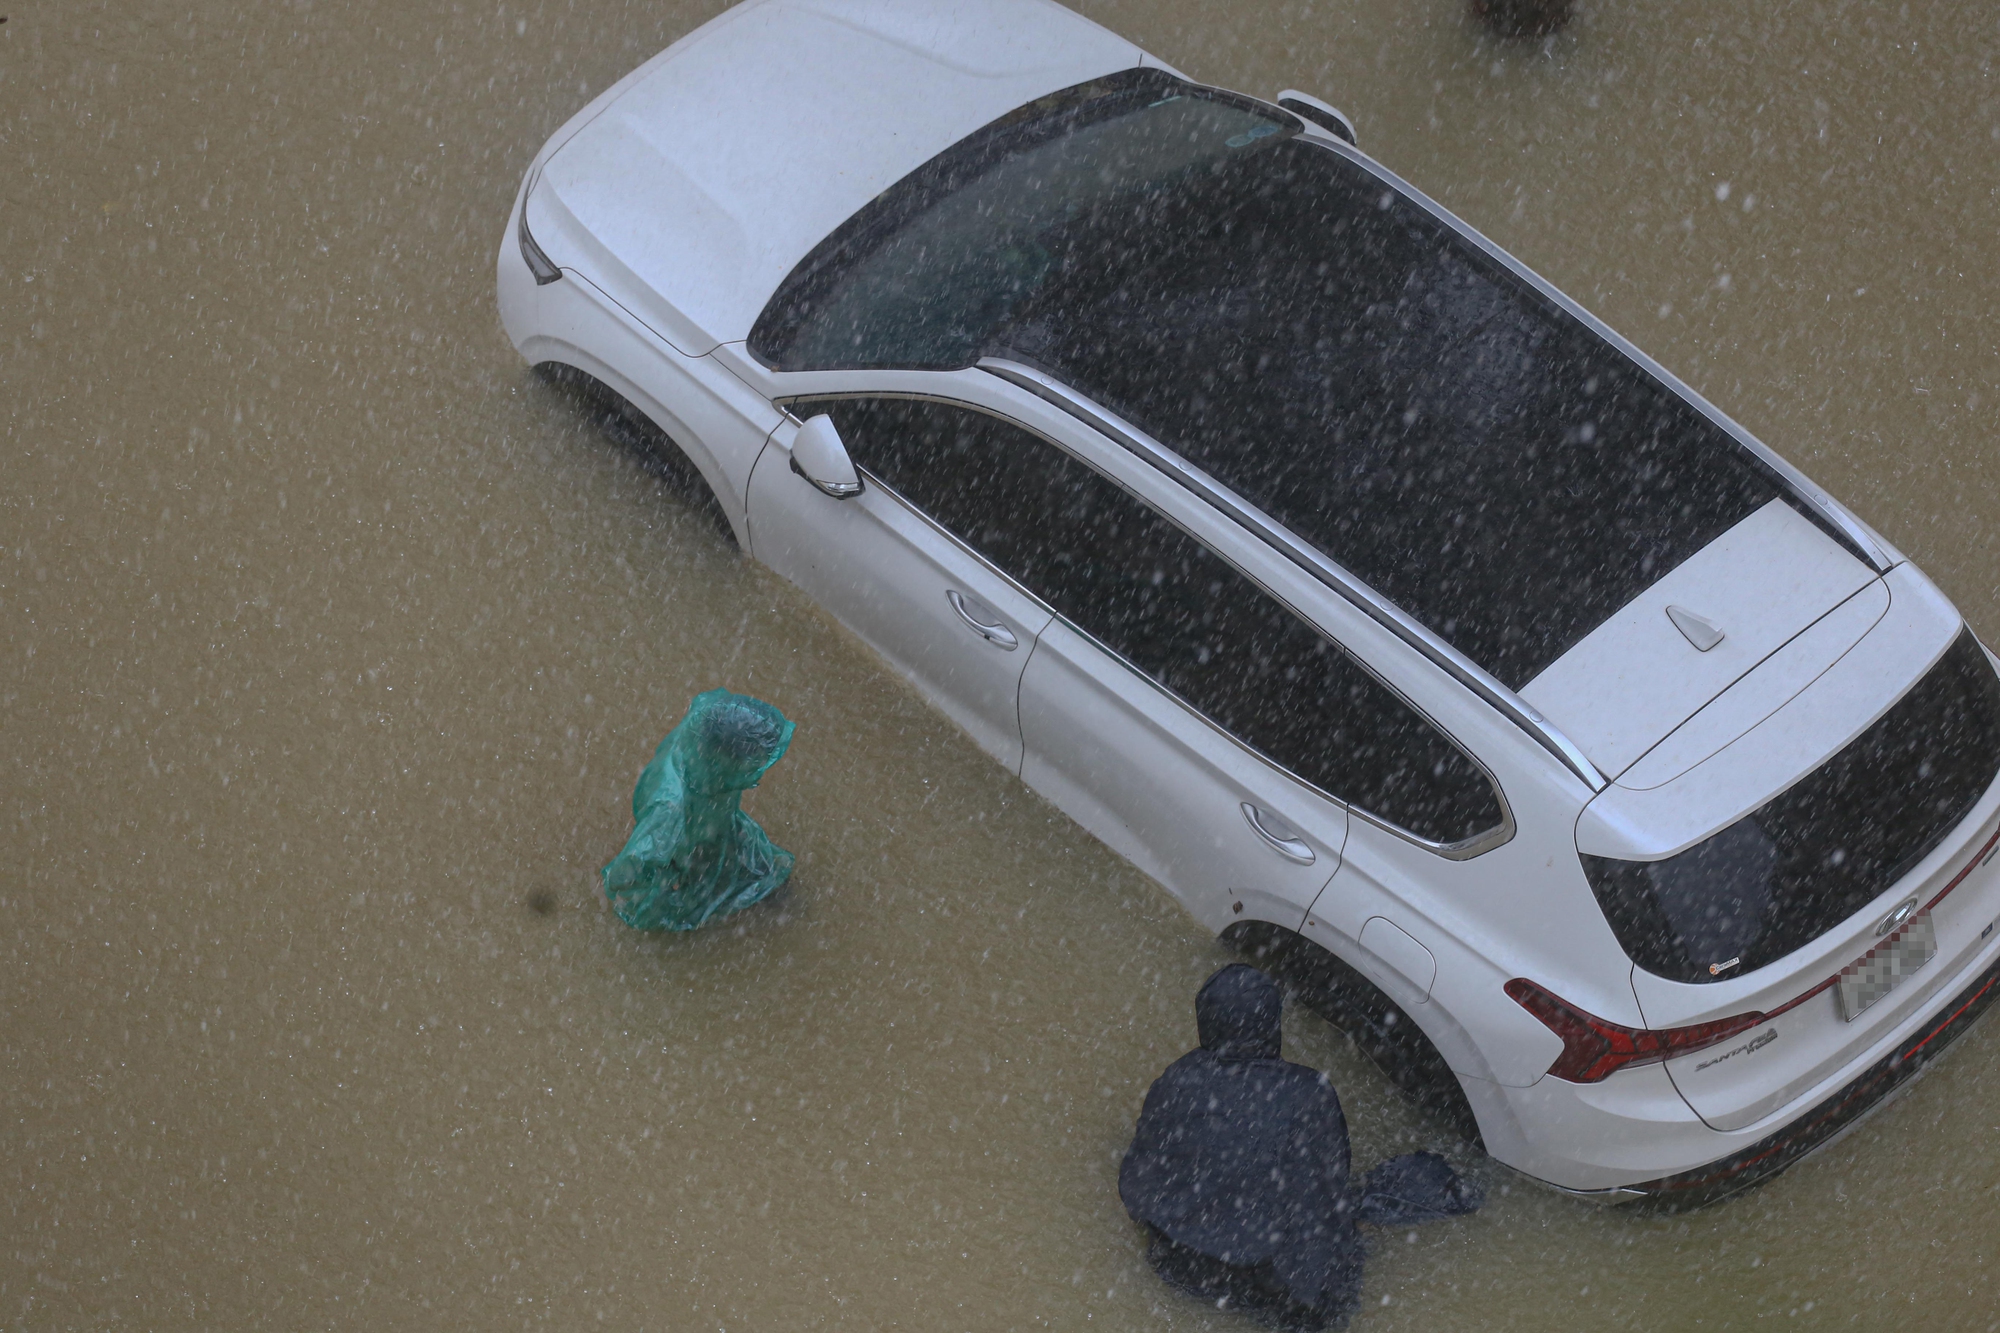 Xót xa loạt ô tô tại Huế bị nước lũ nhấn chìm - Ảnh 3.